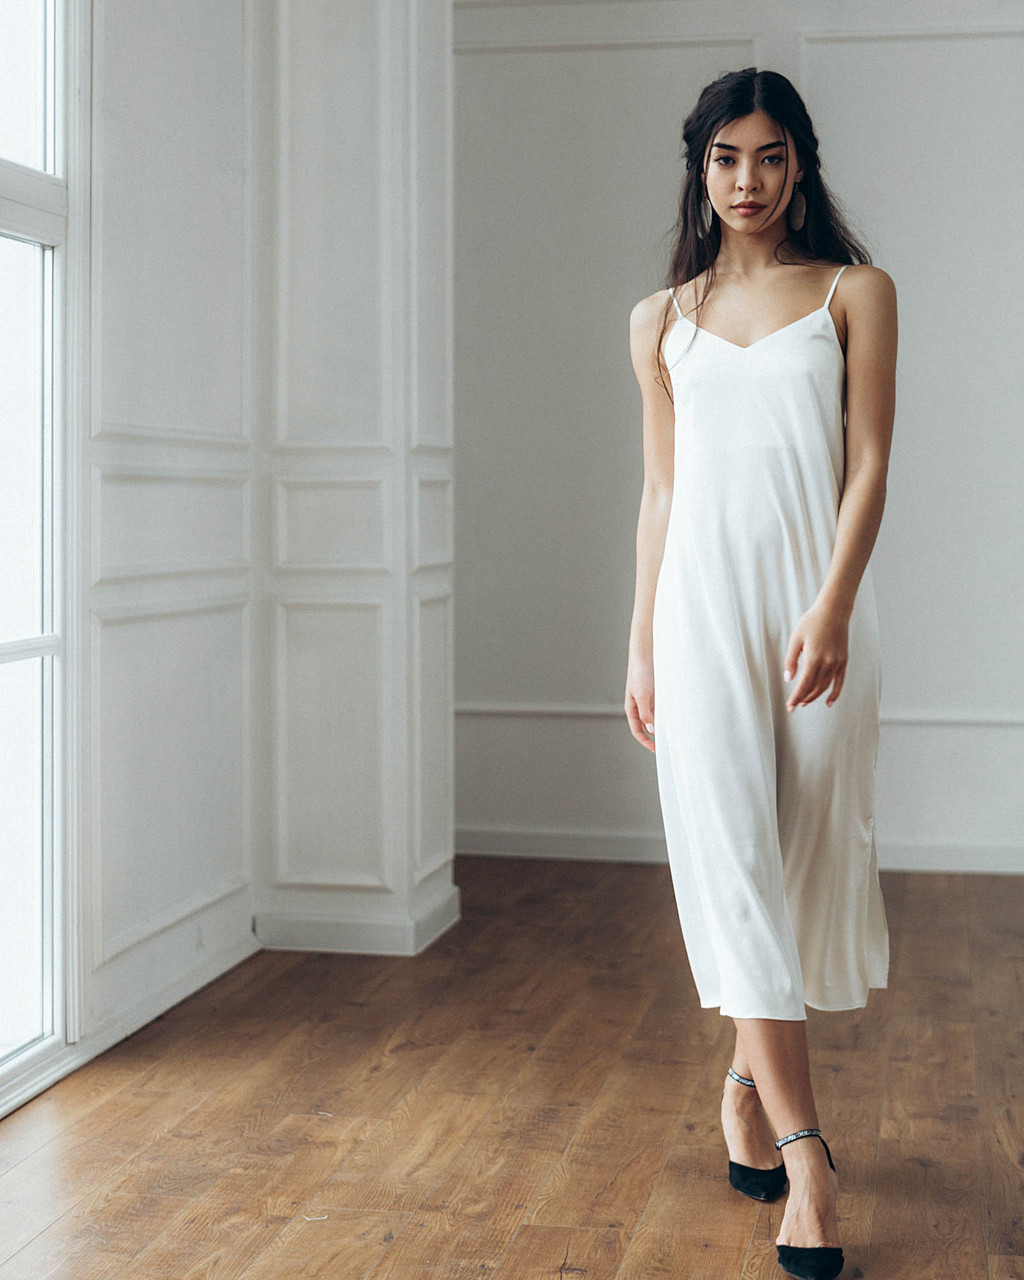 Шелковое платье женское длинное цвет молоко в бельевом стиле от бренда Тур, размеры: S, M, L TURWEAR - Фото 1